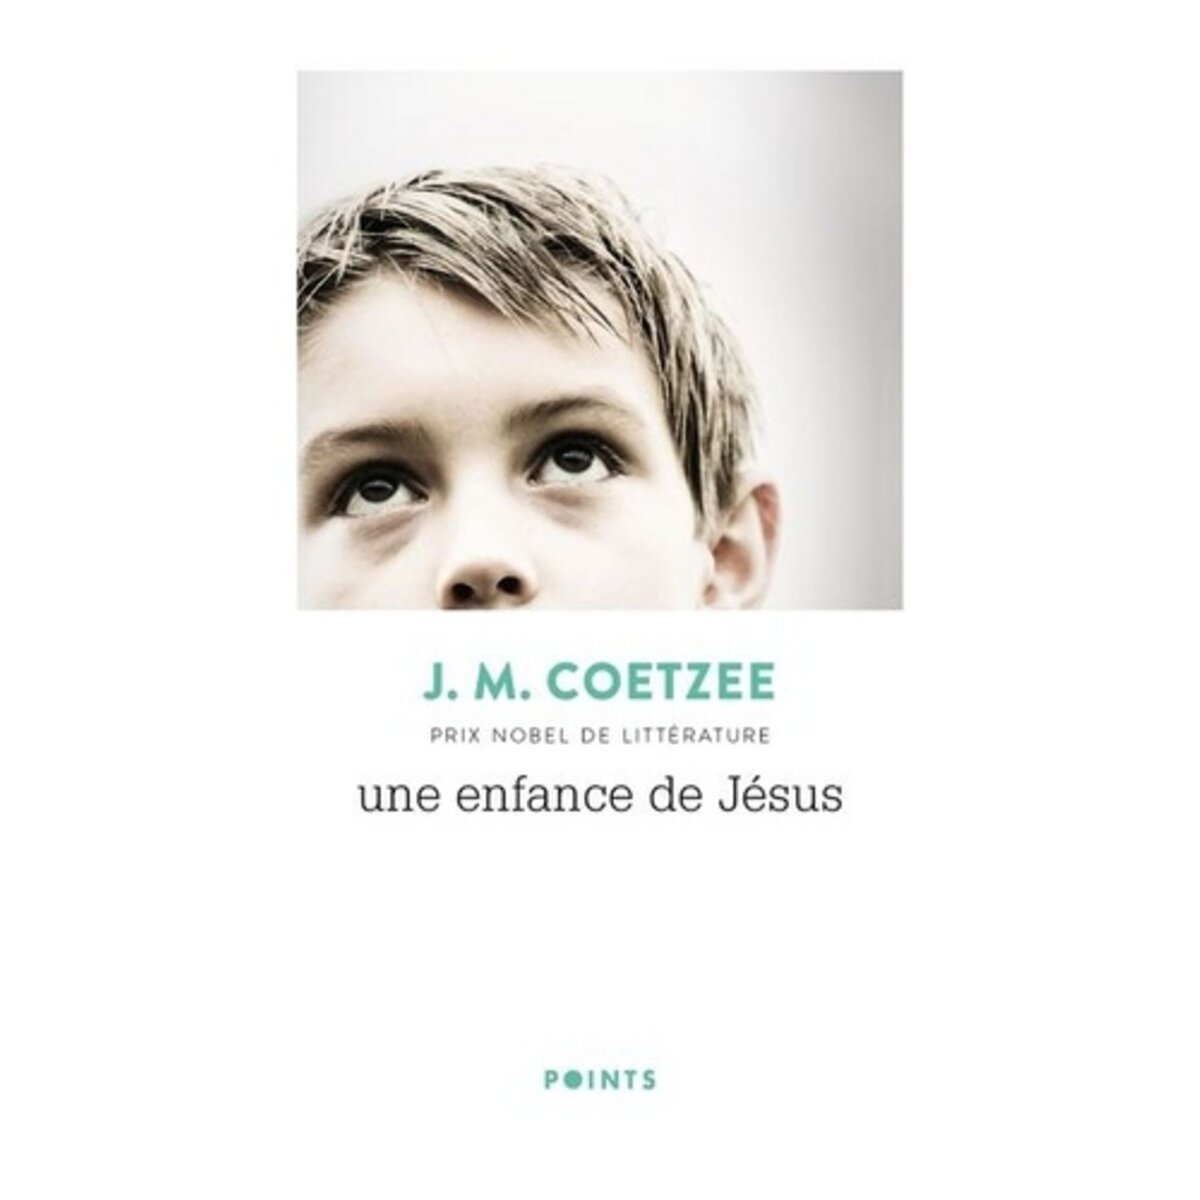  UNE ENFANCE DE JESUS, Coetzee J. M.